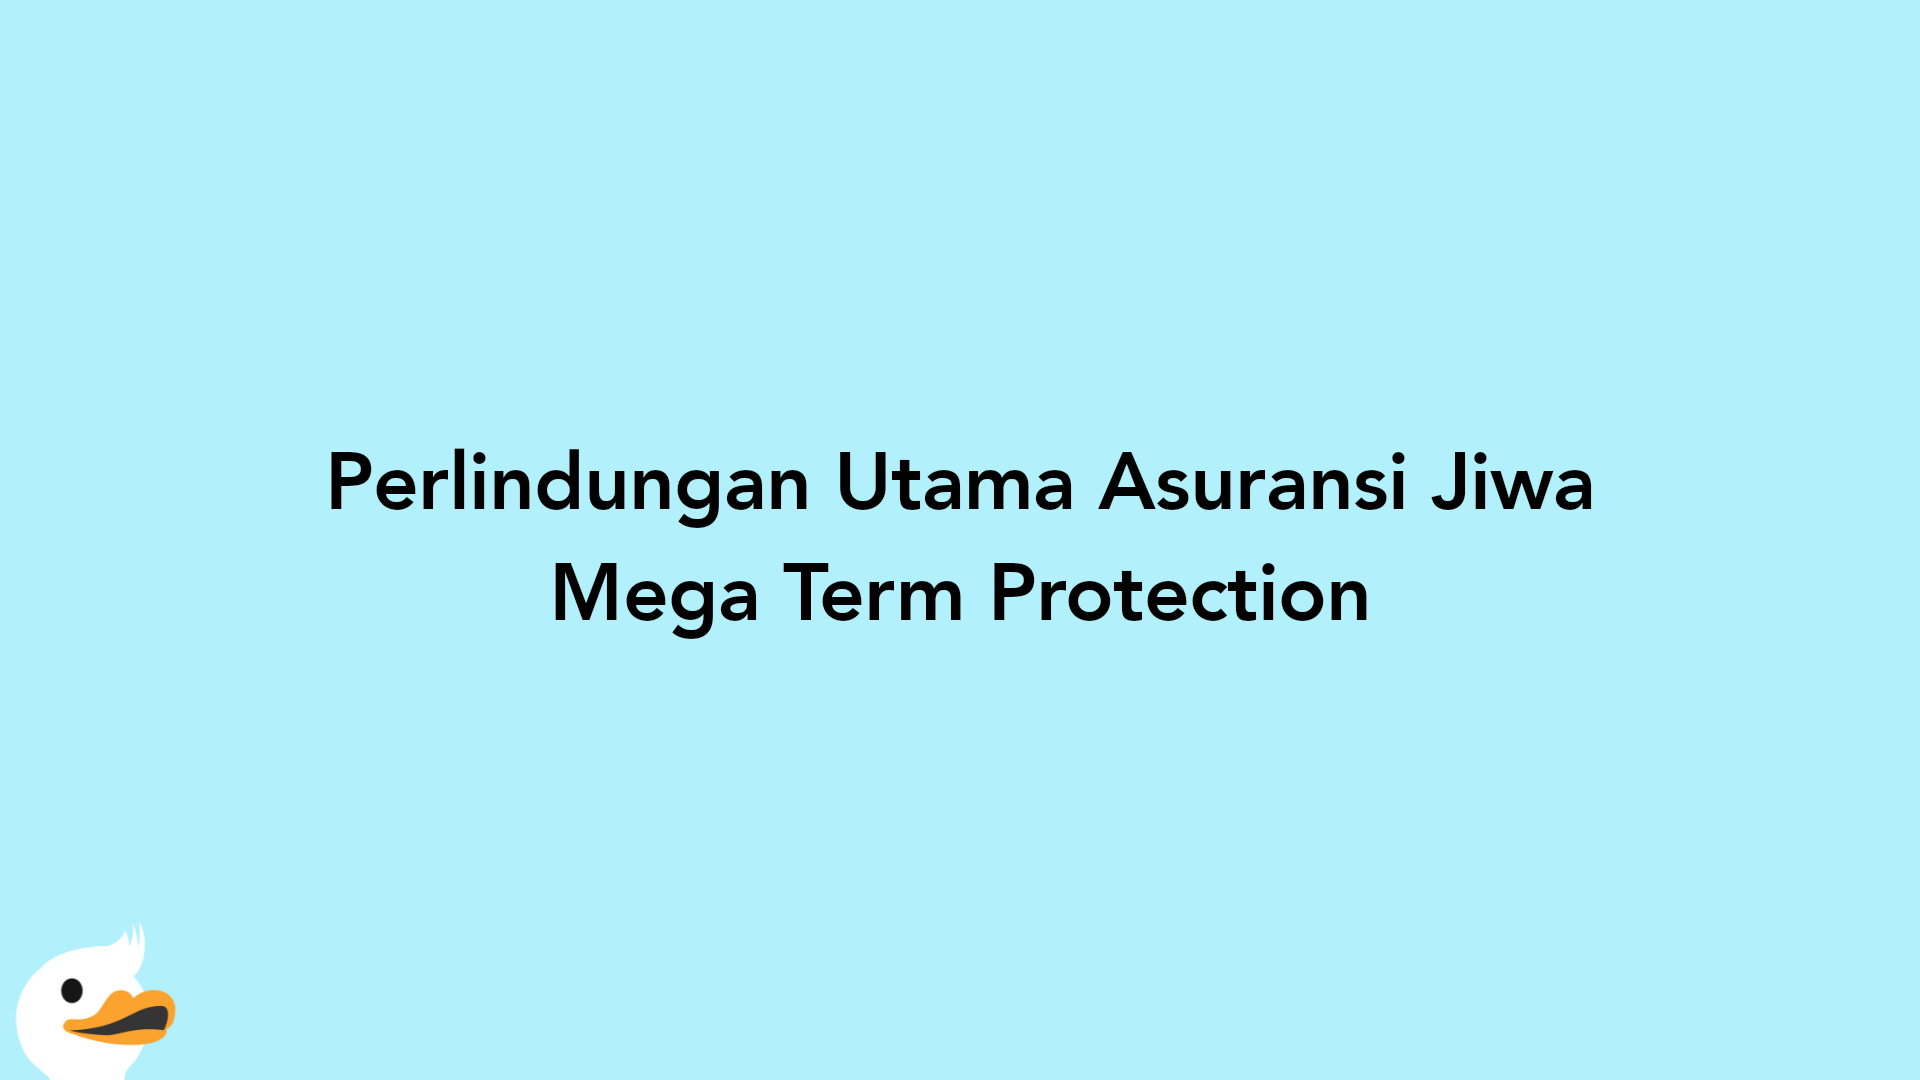 Perlindungan Utama Asuransi Jiwa Mega Term Protection